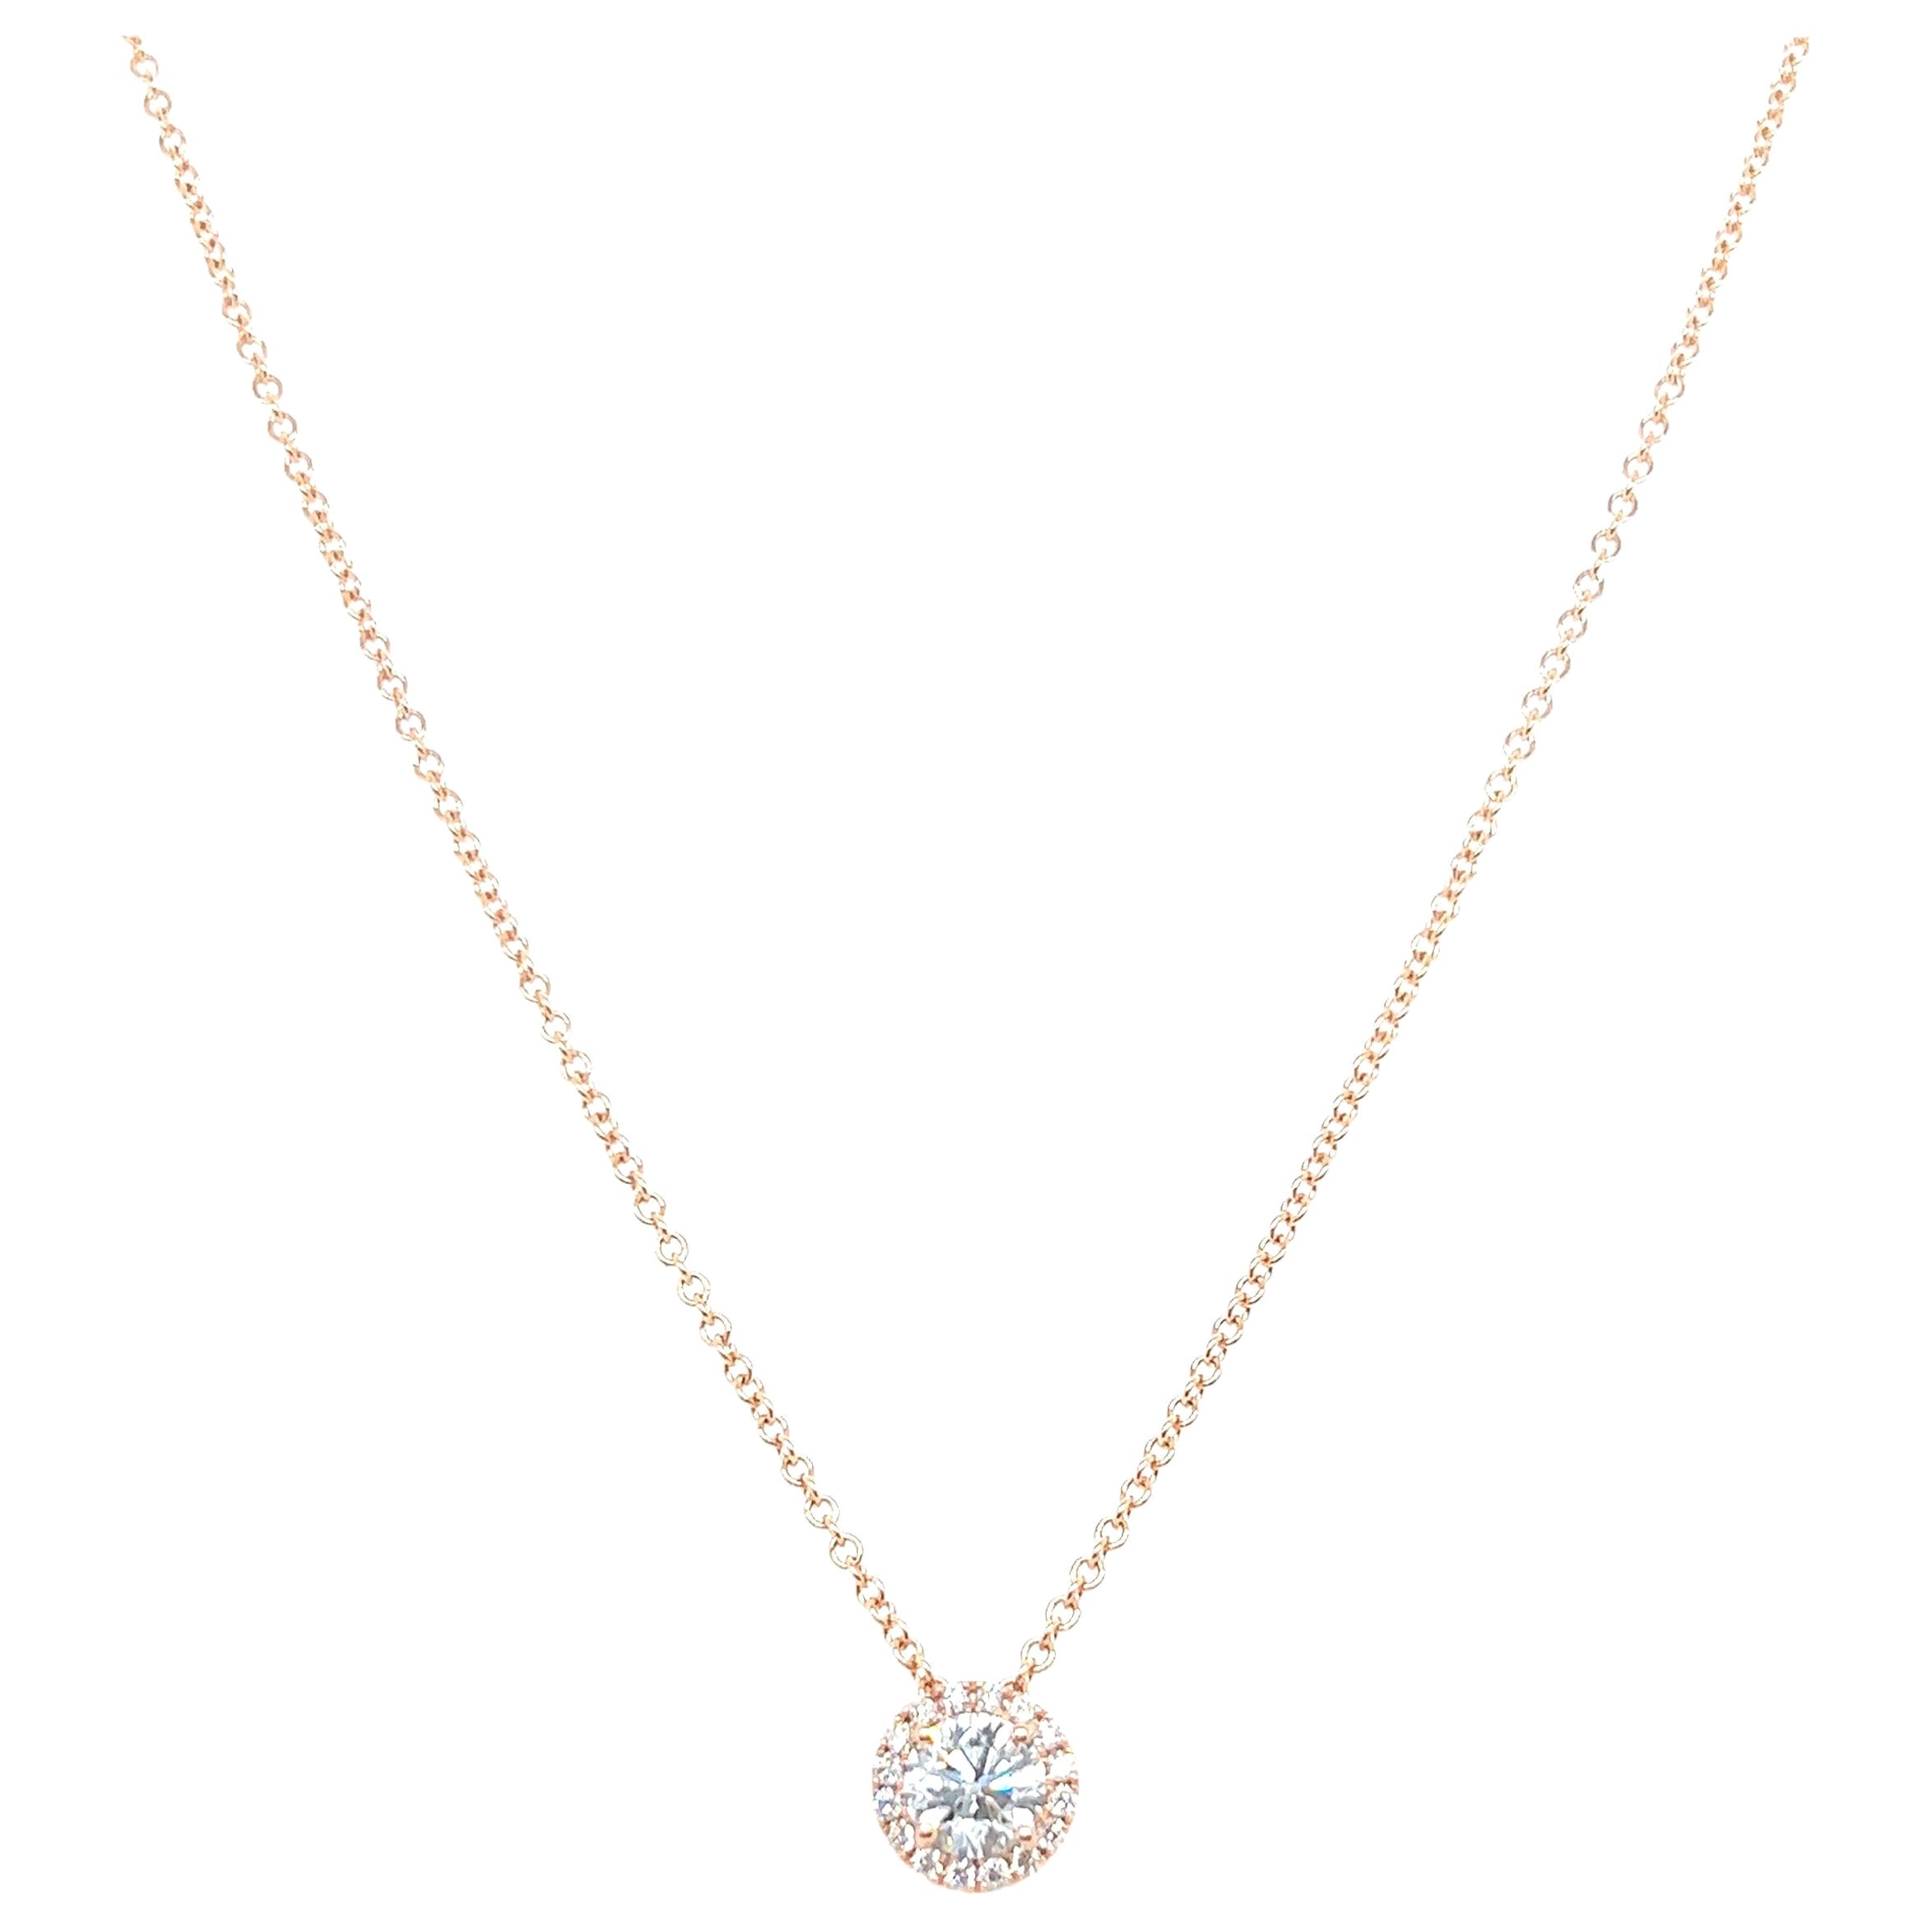 Collier à pendentif solitaire en or blanc 14 carats avec diamants taille ronde de 0,65 carat